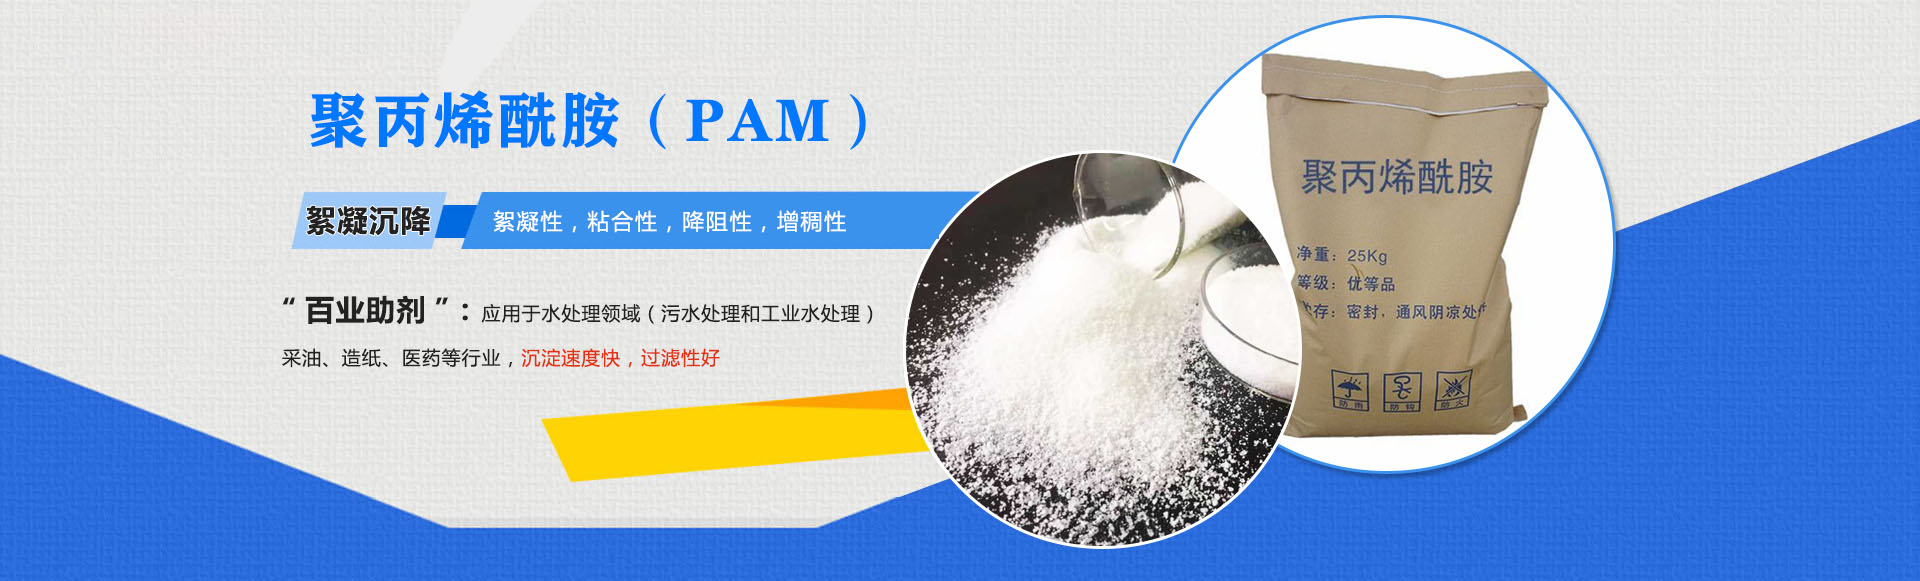 聚丙稀銑胺(PAM)-絮凝沉降:絮凝性,粘合性,降阻性,增稠性;是'百業助劑':應用于水處理,造紙,石油開采,醫藥等行業,沉淀速度快,過濾性好